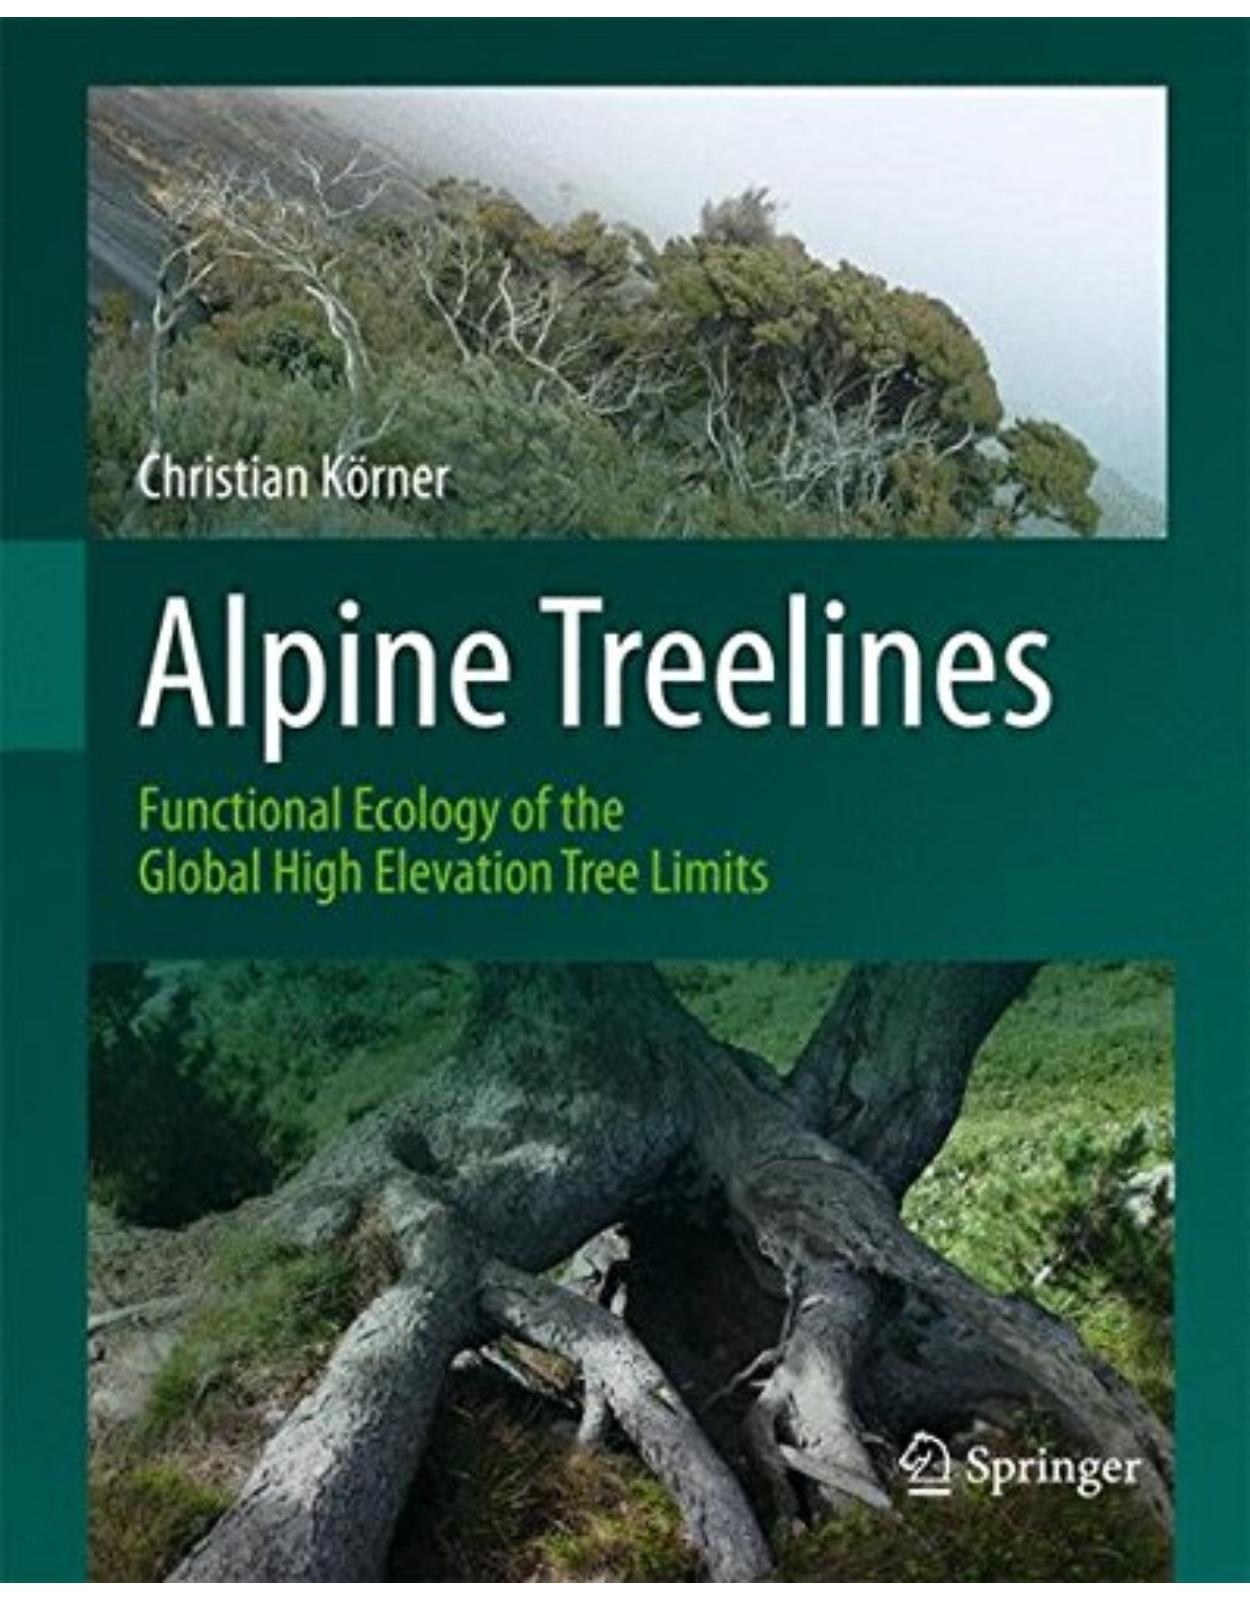 Alpine Treelines